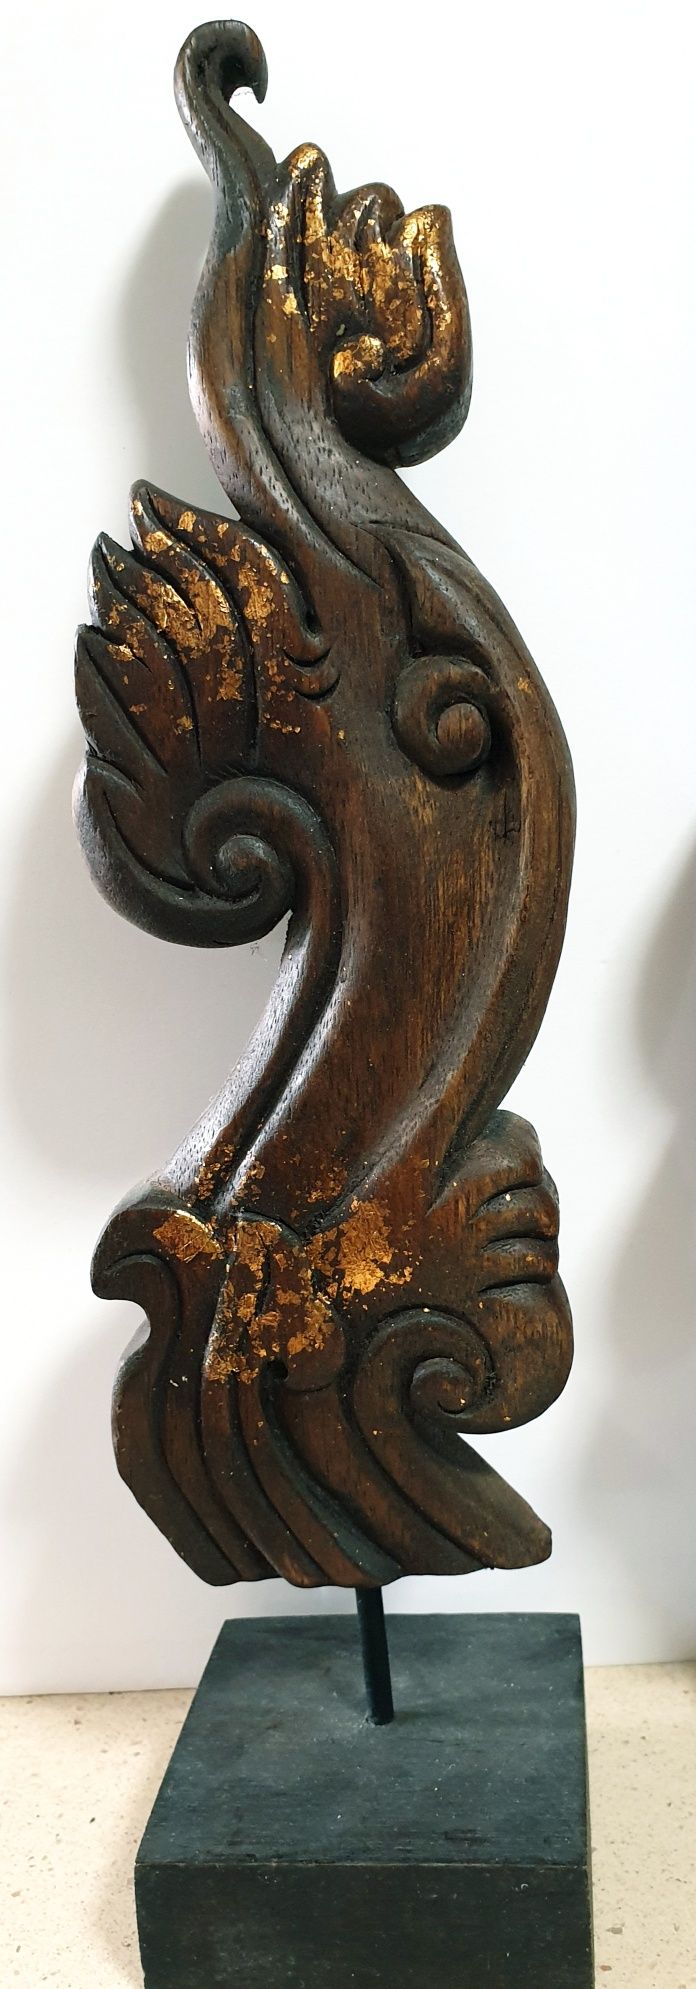 Lindas esculturas asiáticas em madeira esculpida